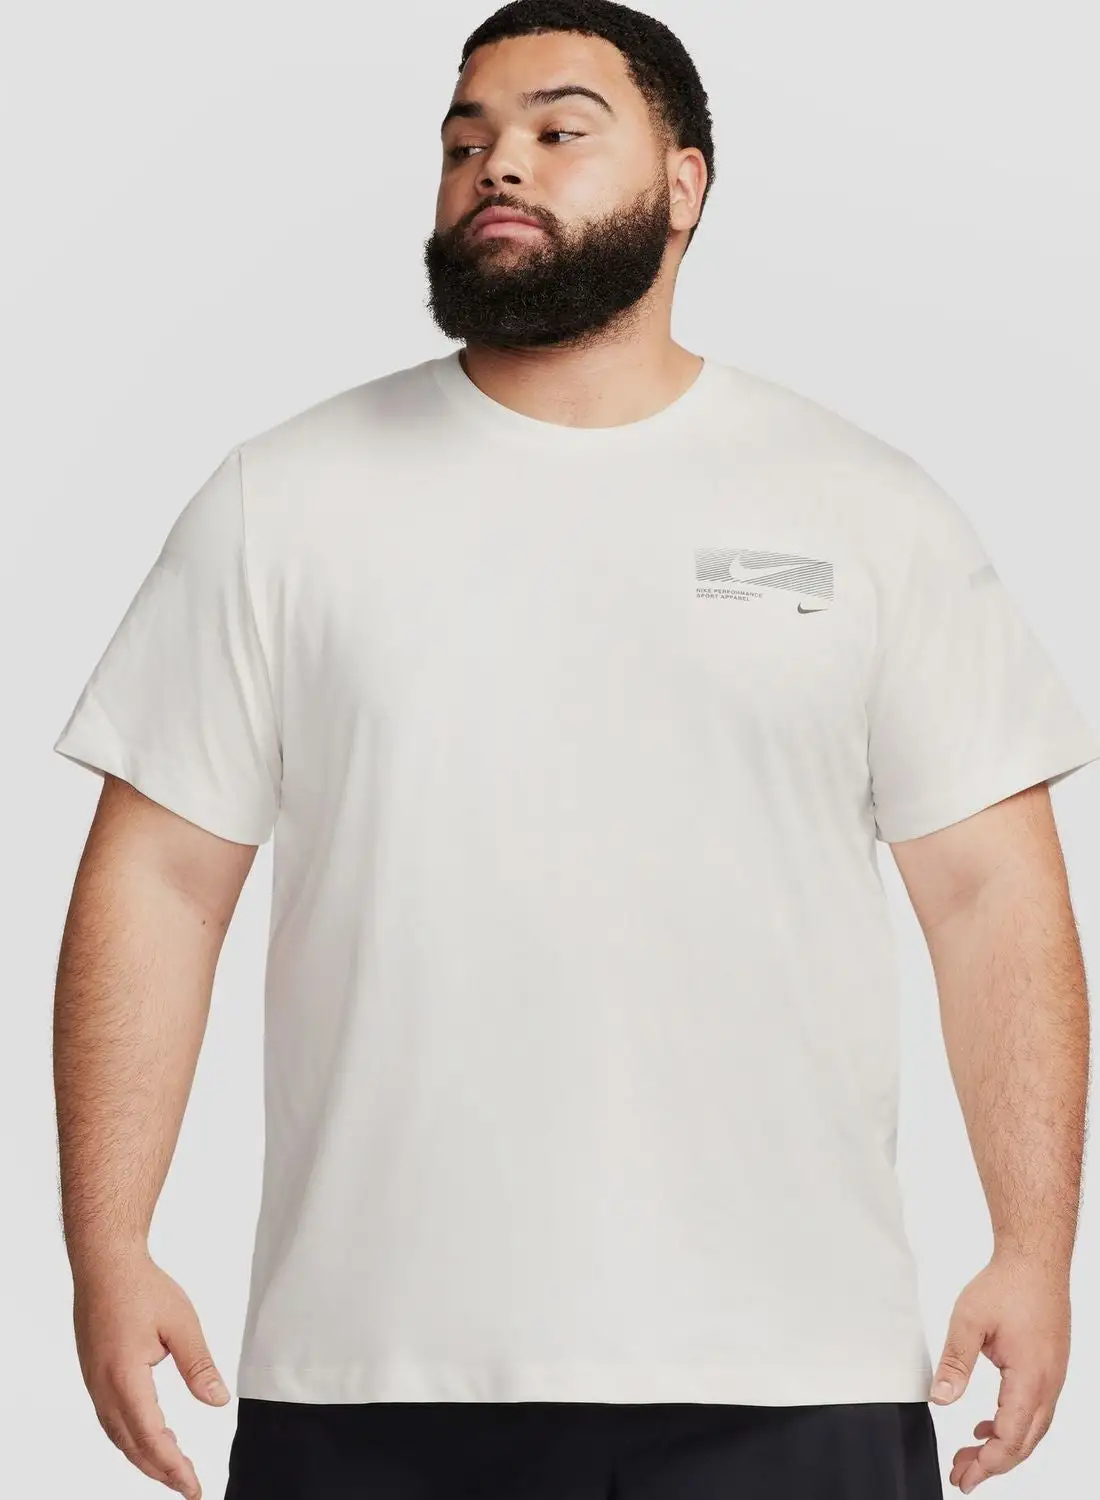 Nike Dri-Fit Flash T-Shirt